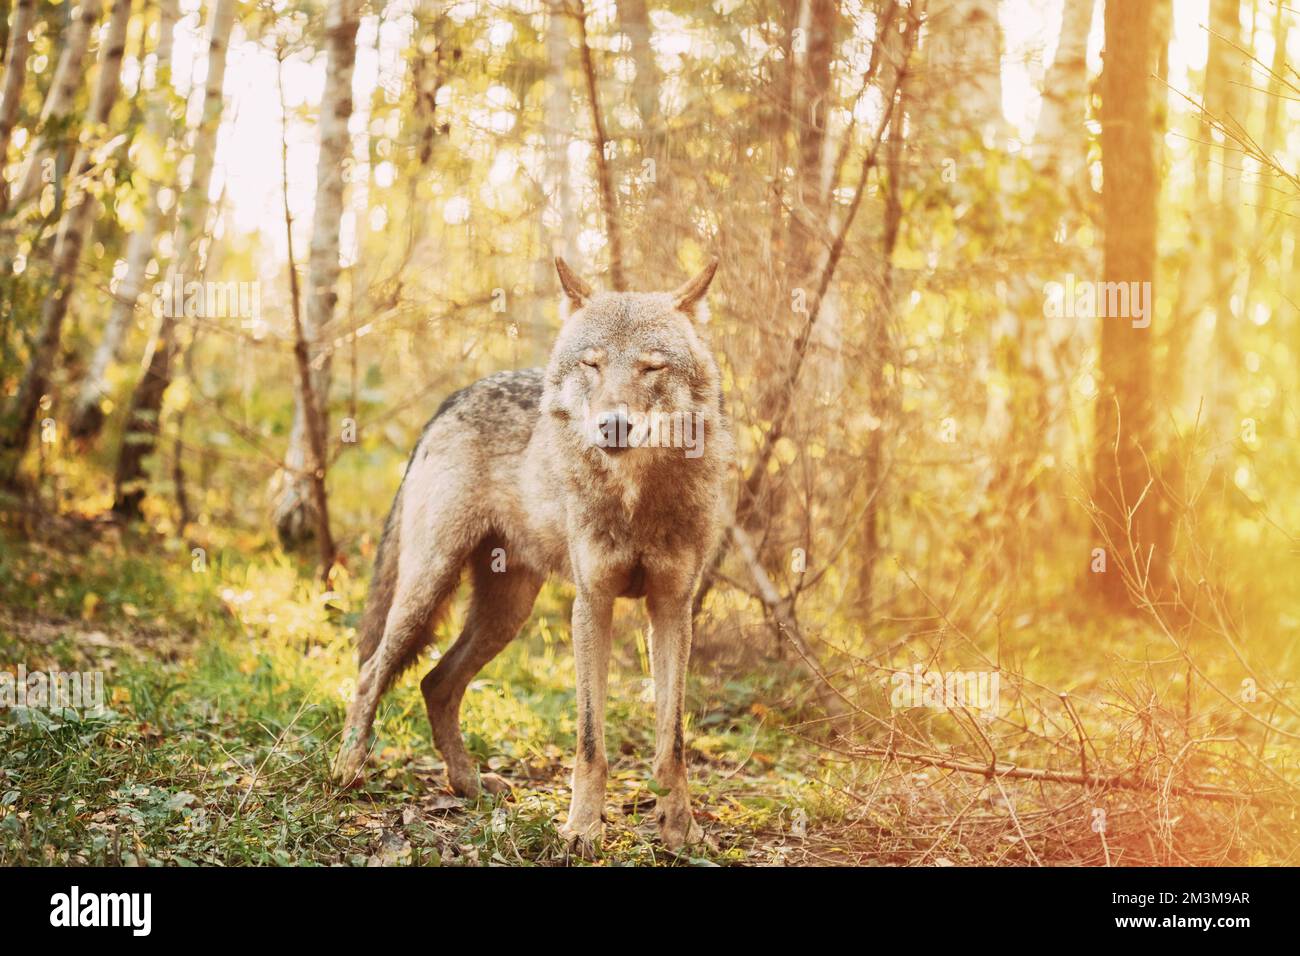 Eurasischer Wolf, Wissenschaftlicher Name - Canis Lupus In Natürlicher Umgebung. Wald In Der Herbstsaison. Natürlicher Lebensraum. Grauer Oder Grauer Wolf, Auch Bekannt Als Stockfoto